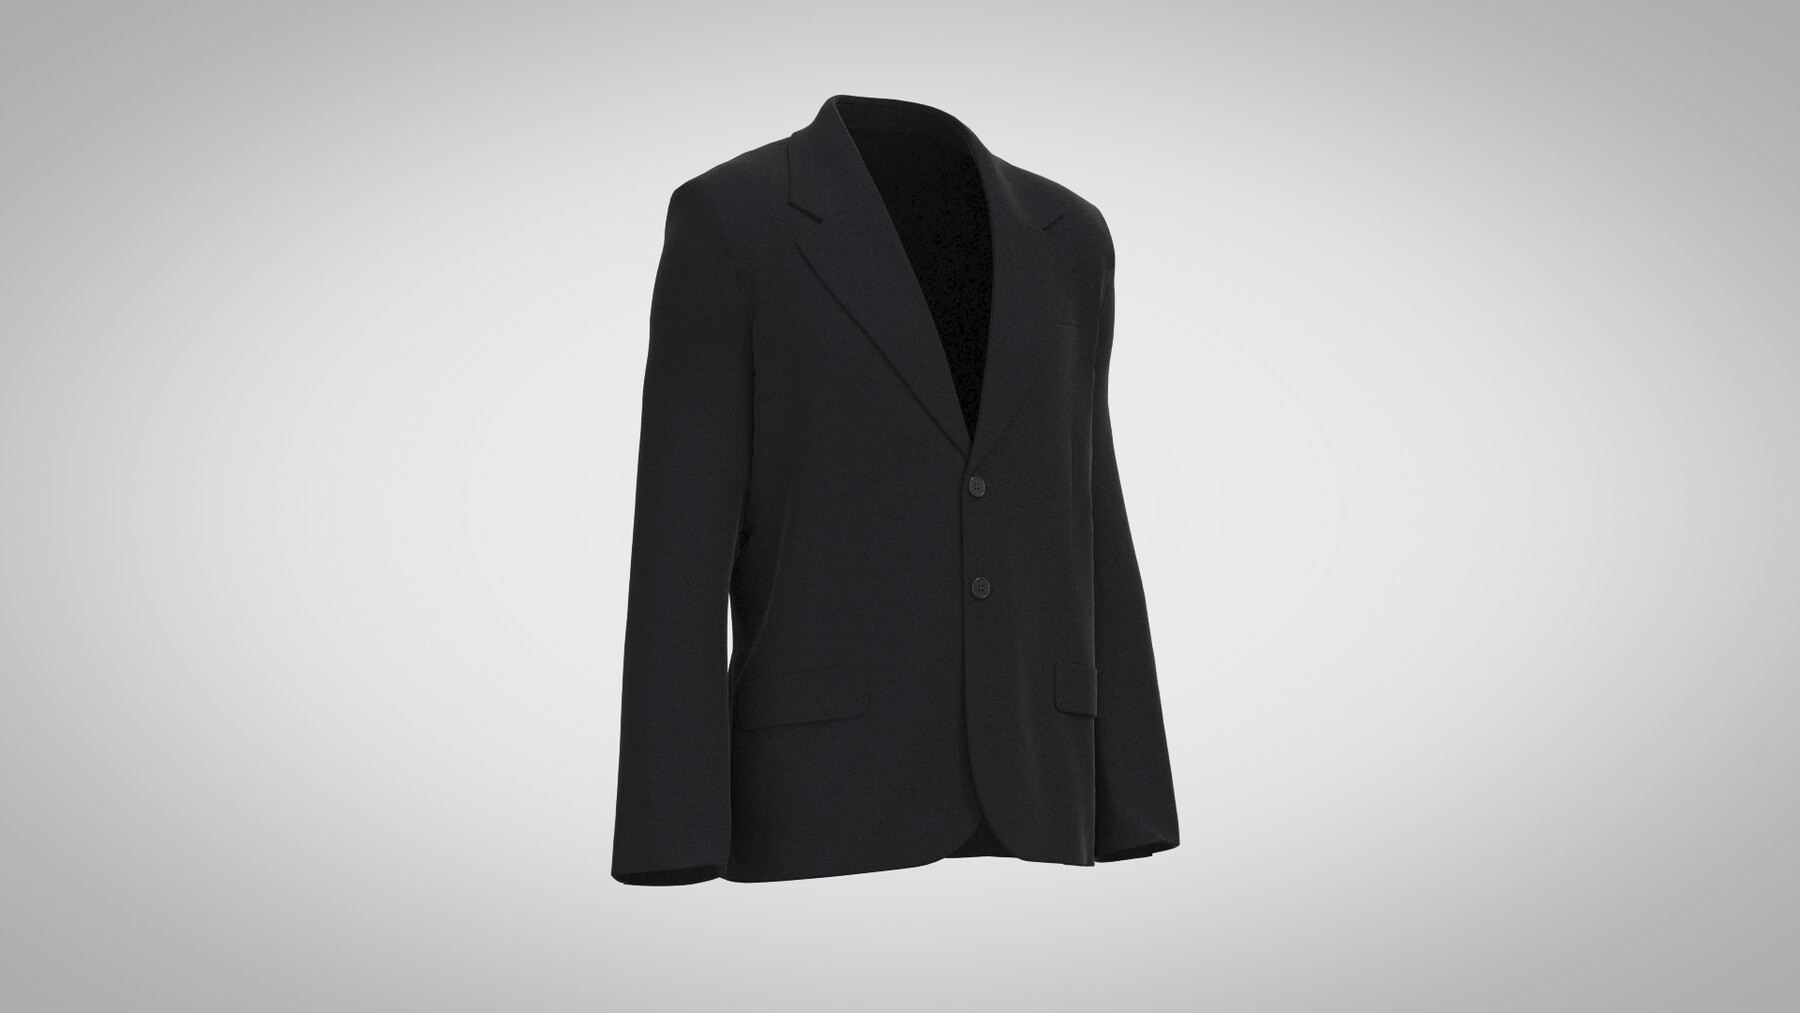 ArtStation - Classic Suit Jacket | Resources